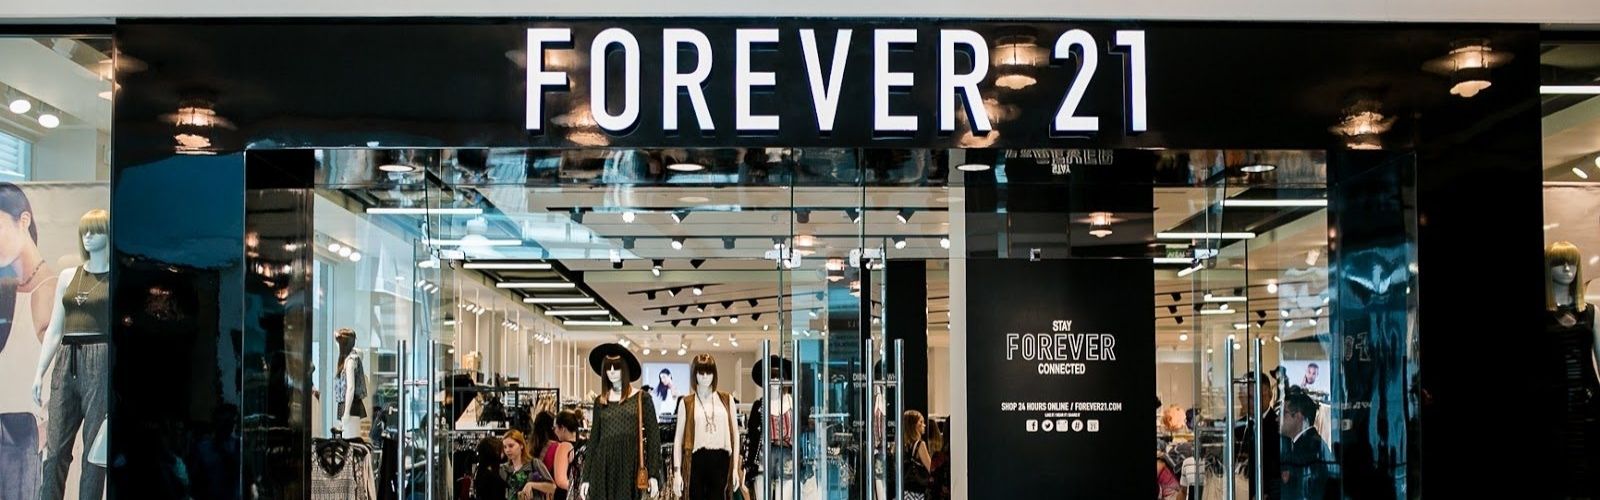 Forever 21 inaugura sua primeira loja na região Norte do Brasil